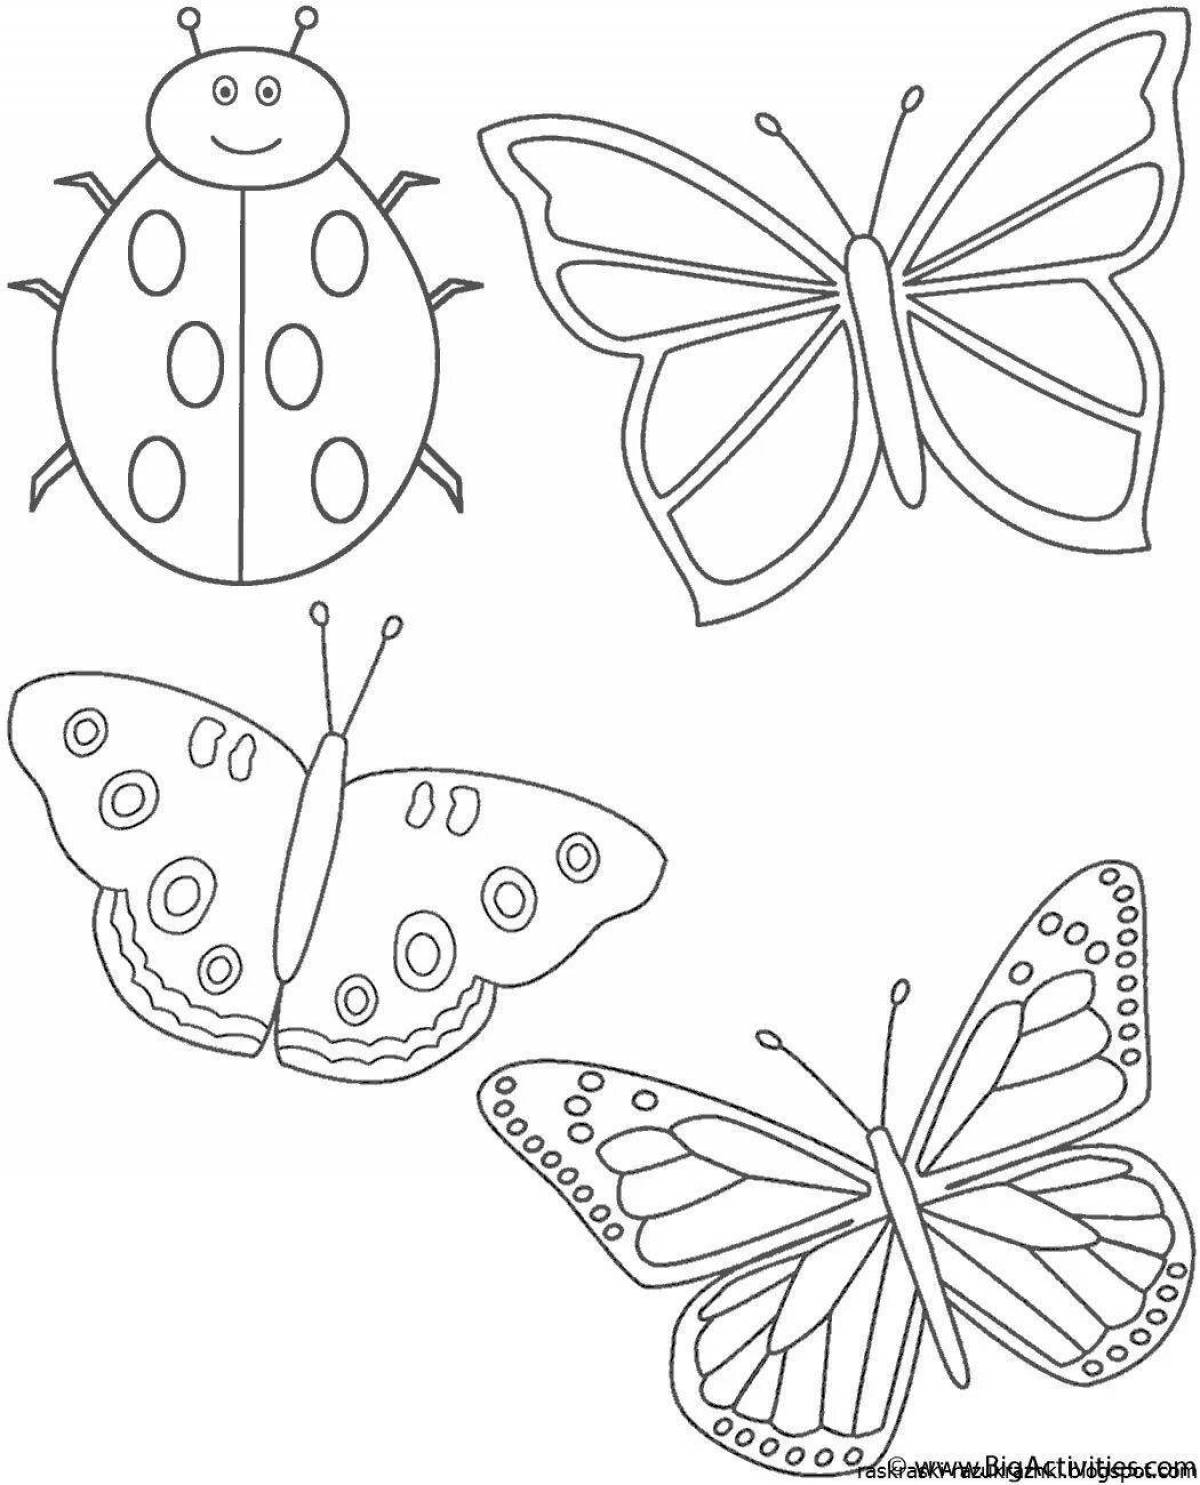 Раскраска насекомые для детей 7 лет. Рисунки для раскрашивания. Бабочка раскраска для детей. Раскраска для малы бабочка. Насекомые. Раскраска.